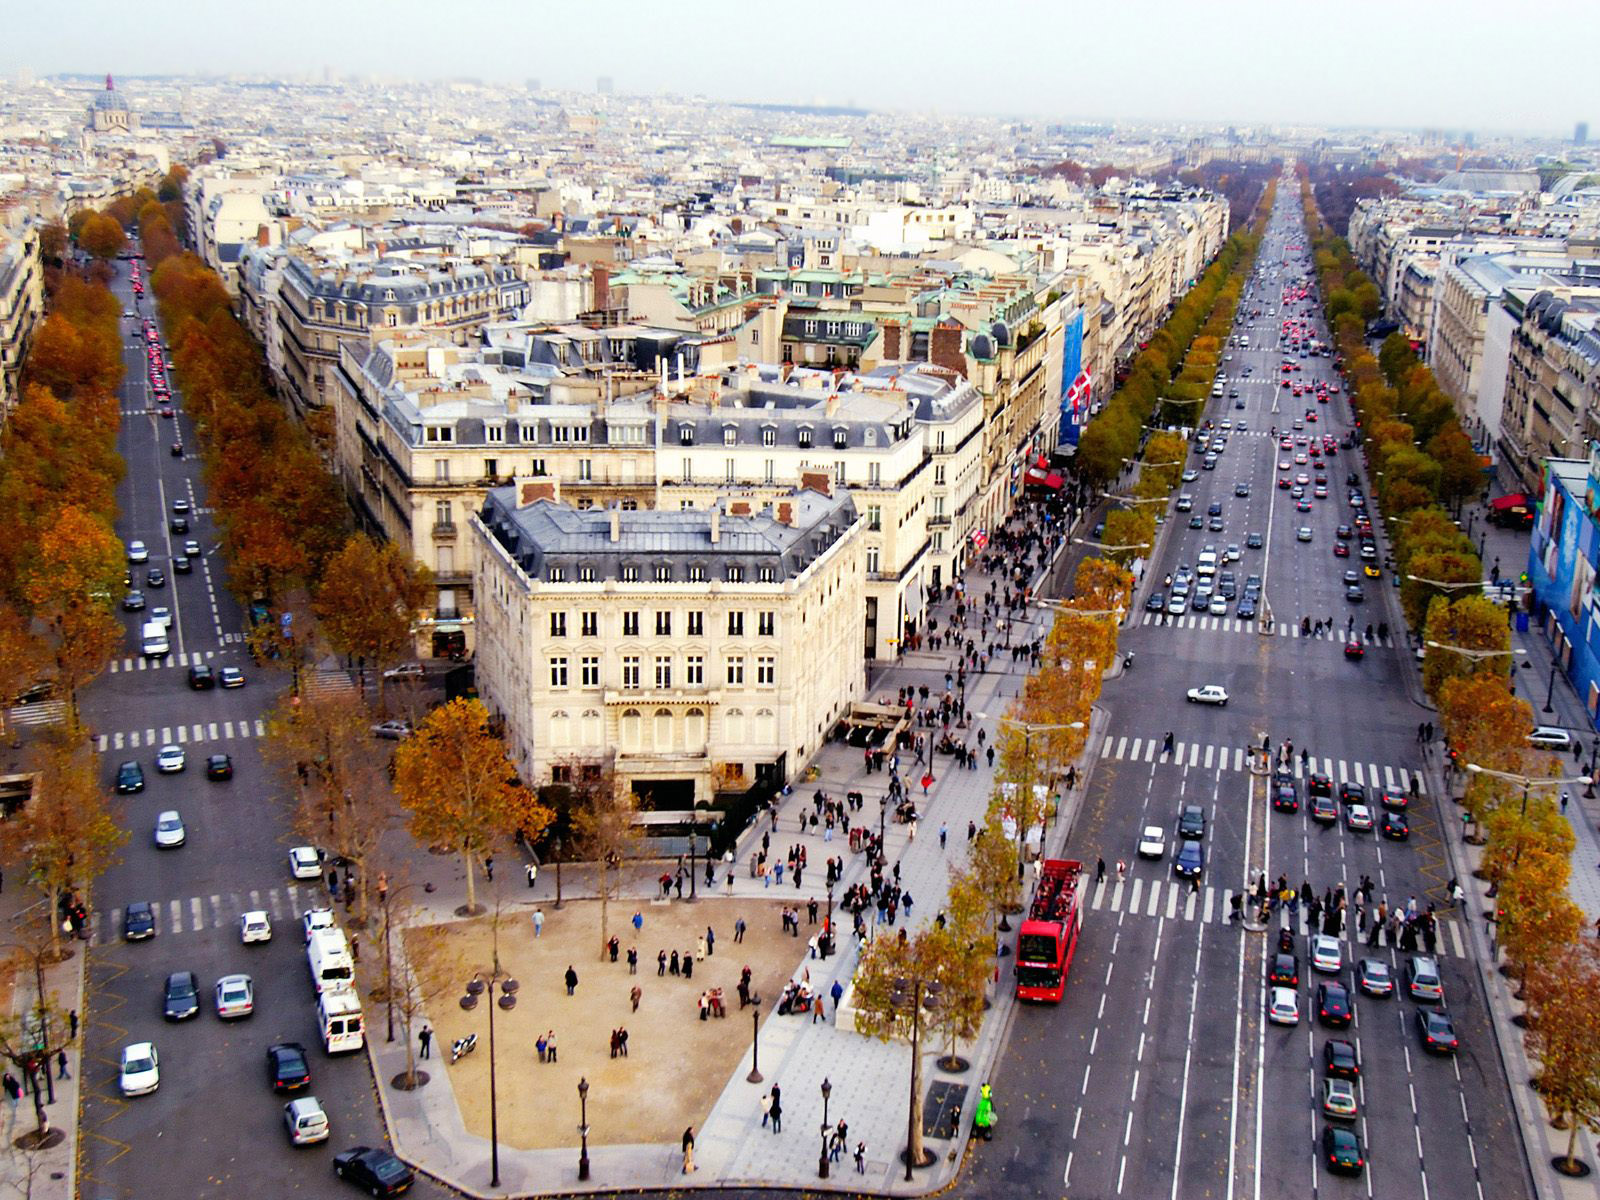 Фото Елисейские поля, фотографии Елисейских полей, фото улиц Парижа, фото достопримечательности Франции